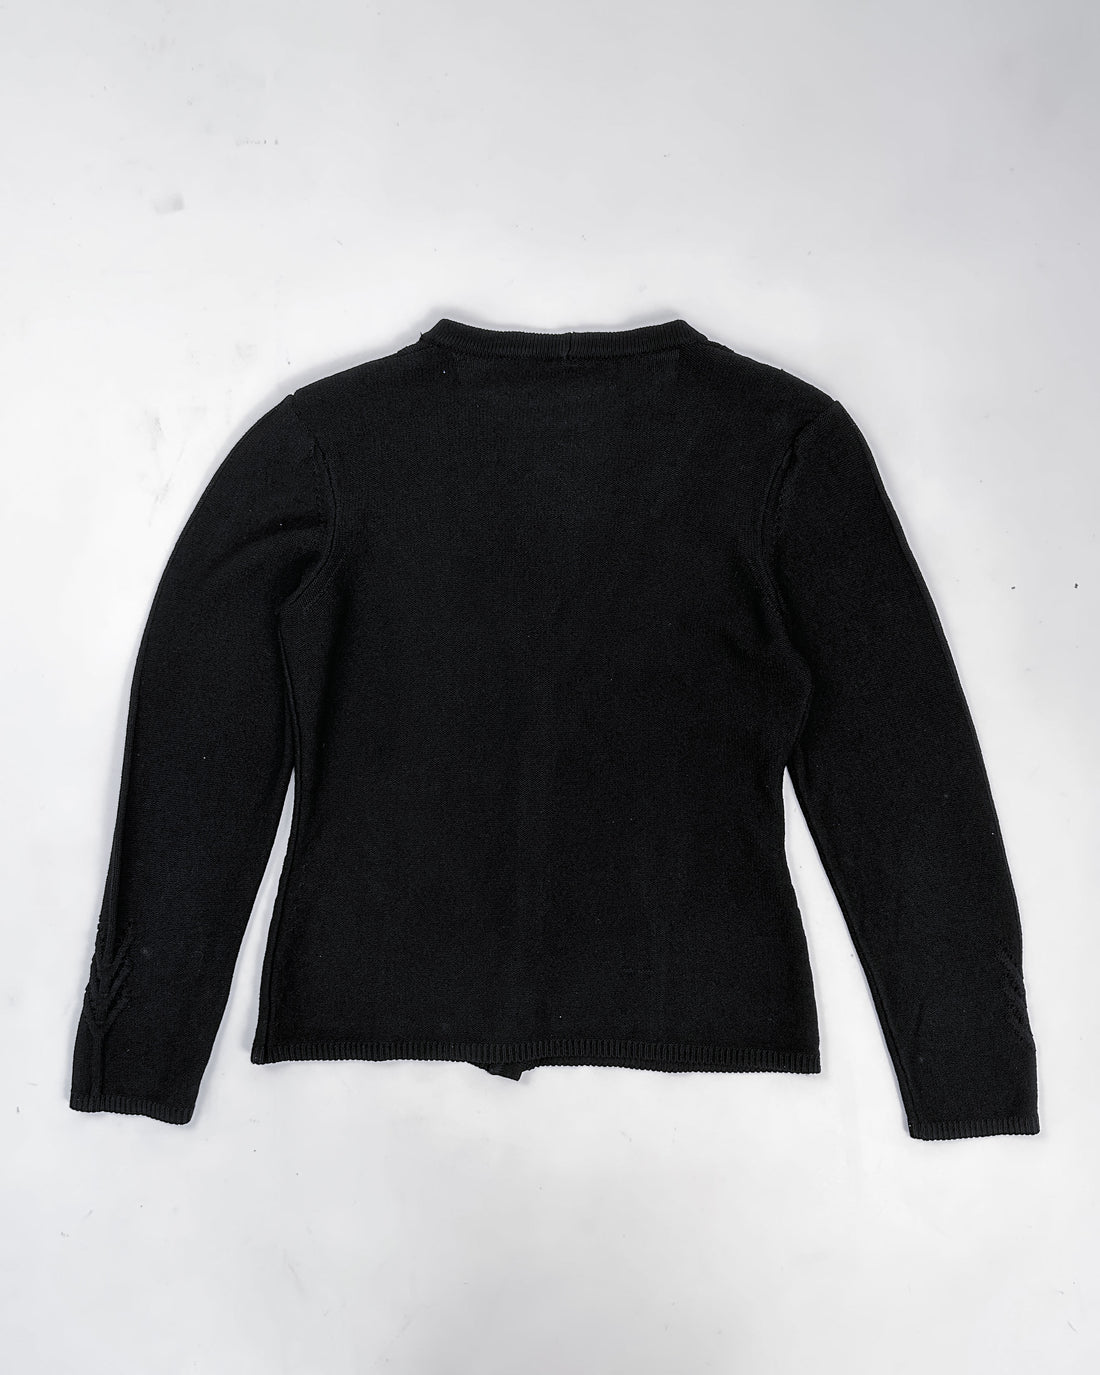 Mugler Black Knit Cardigan 1990's